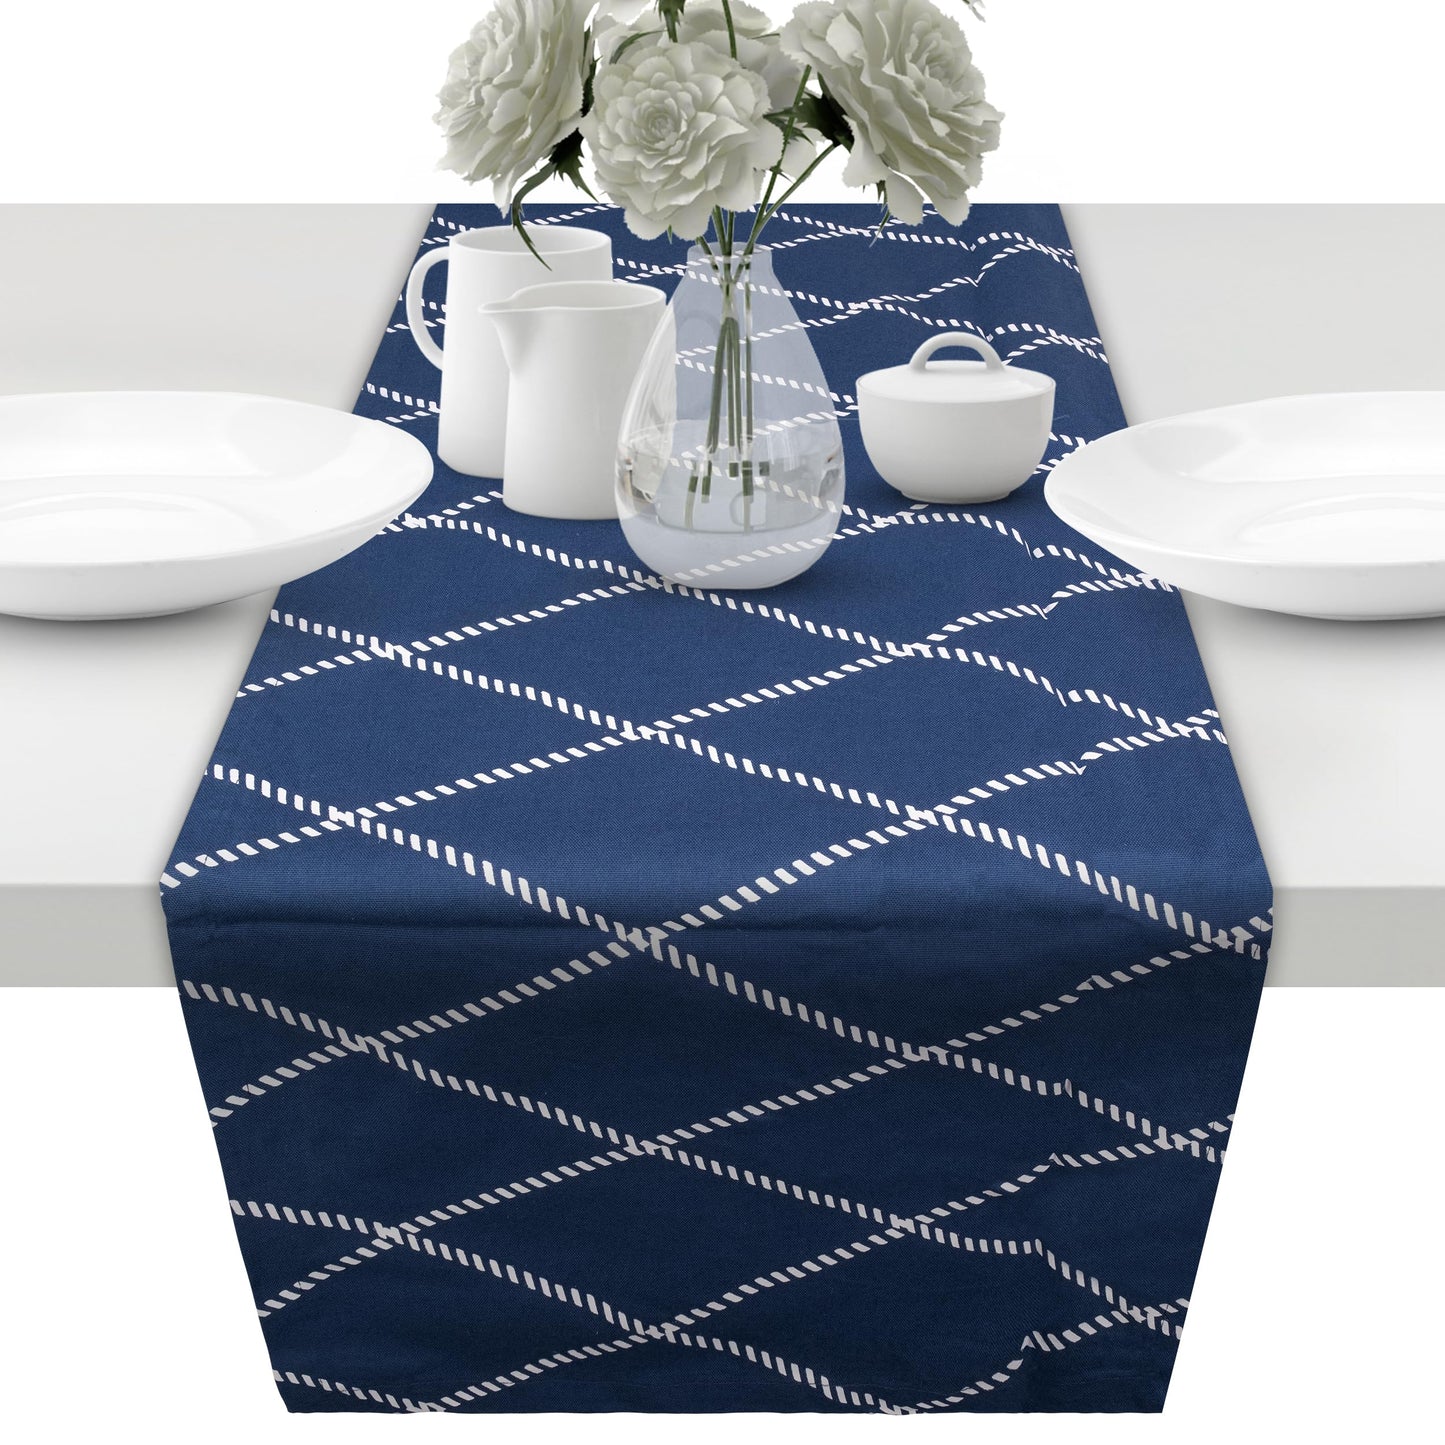 unendlich schoen - Tischläufer aus 100% Baumwolle in Bester Qualität, Tischdecke für Esstisch Wohnzimmer (blauweiß Raute, 43 x 160 cm)